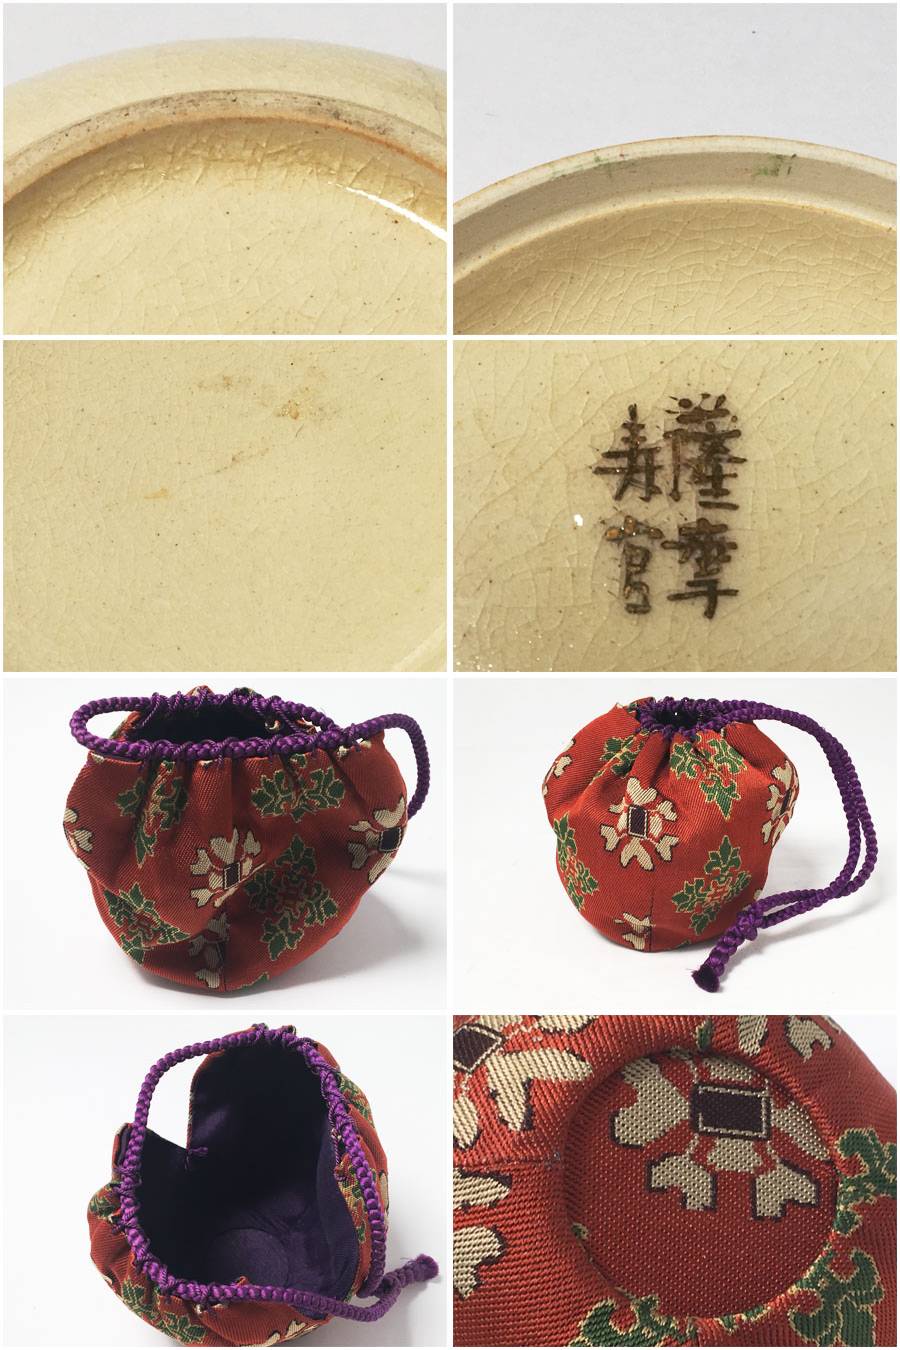 薩摩焼薩摩寿官沈寿官香合薩摩香合草花文茶道具仕覆付商品细节| Yahoo 